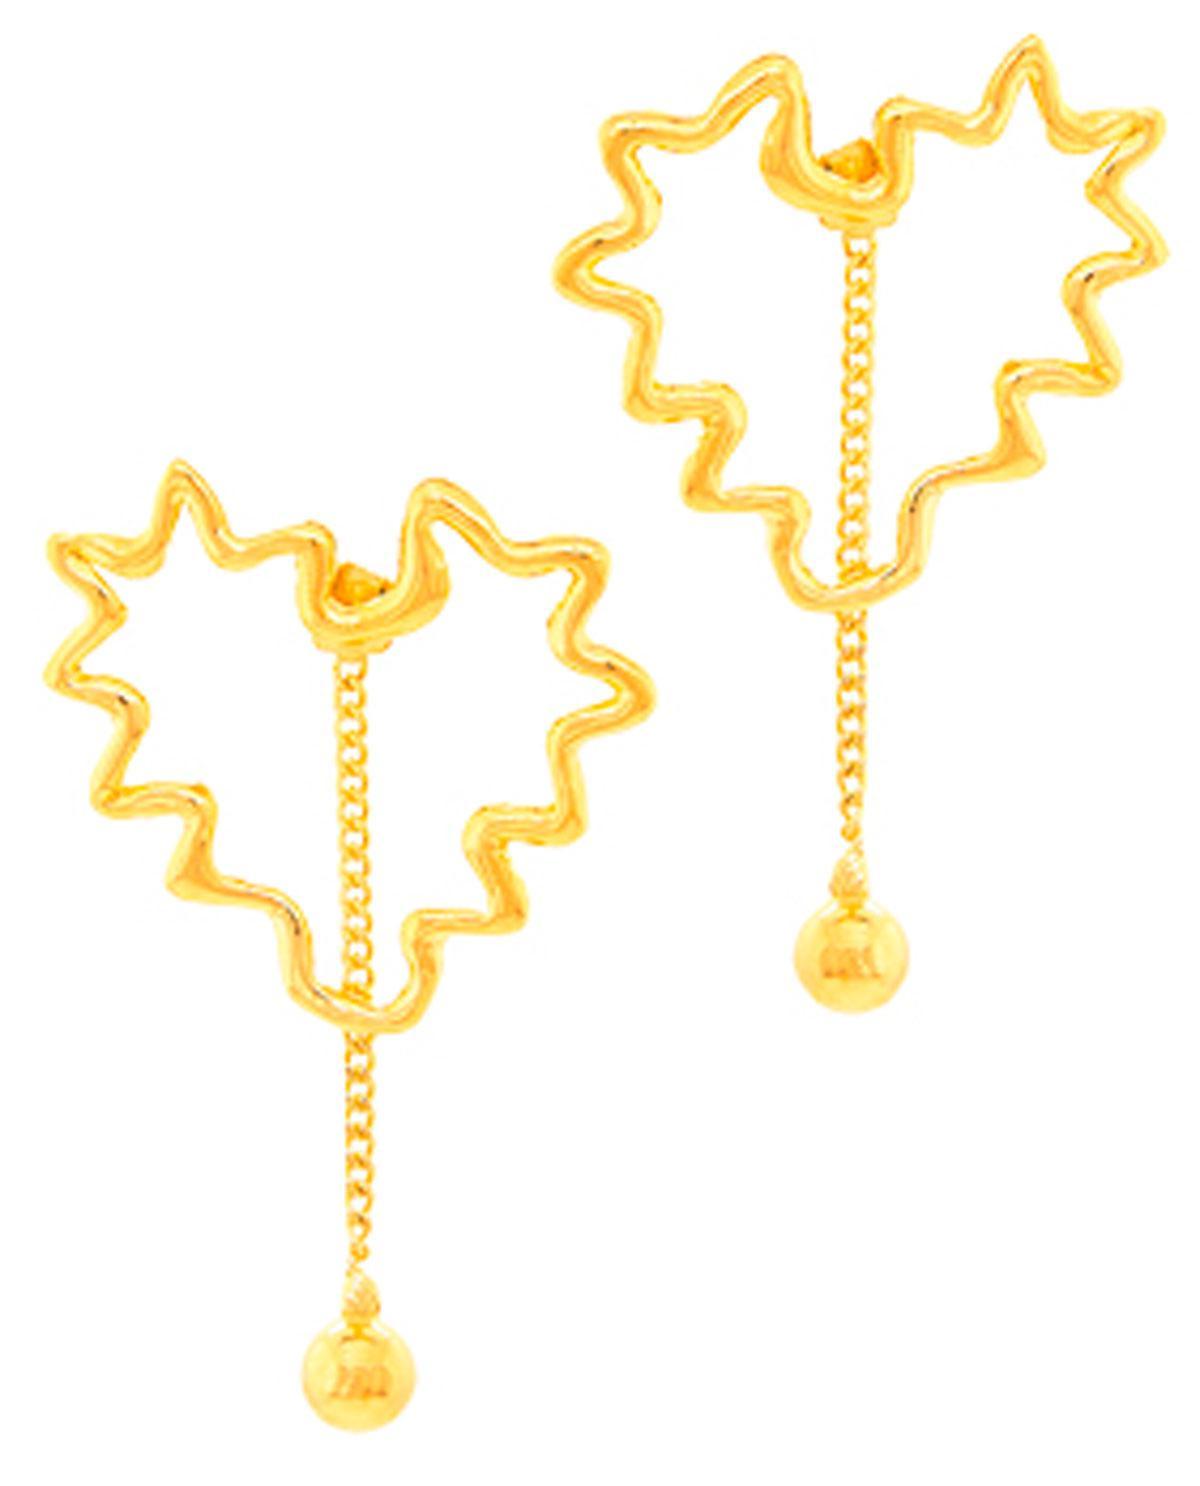 Zilveren oorbellen verguld met 18-karaats goud, 350 euro, Fragille, fra-gille.be